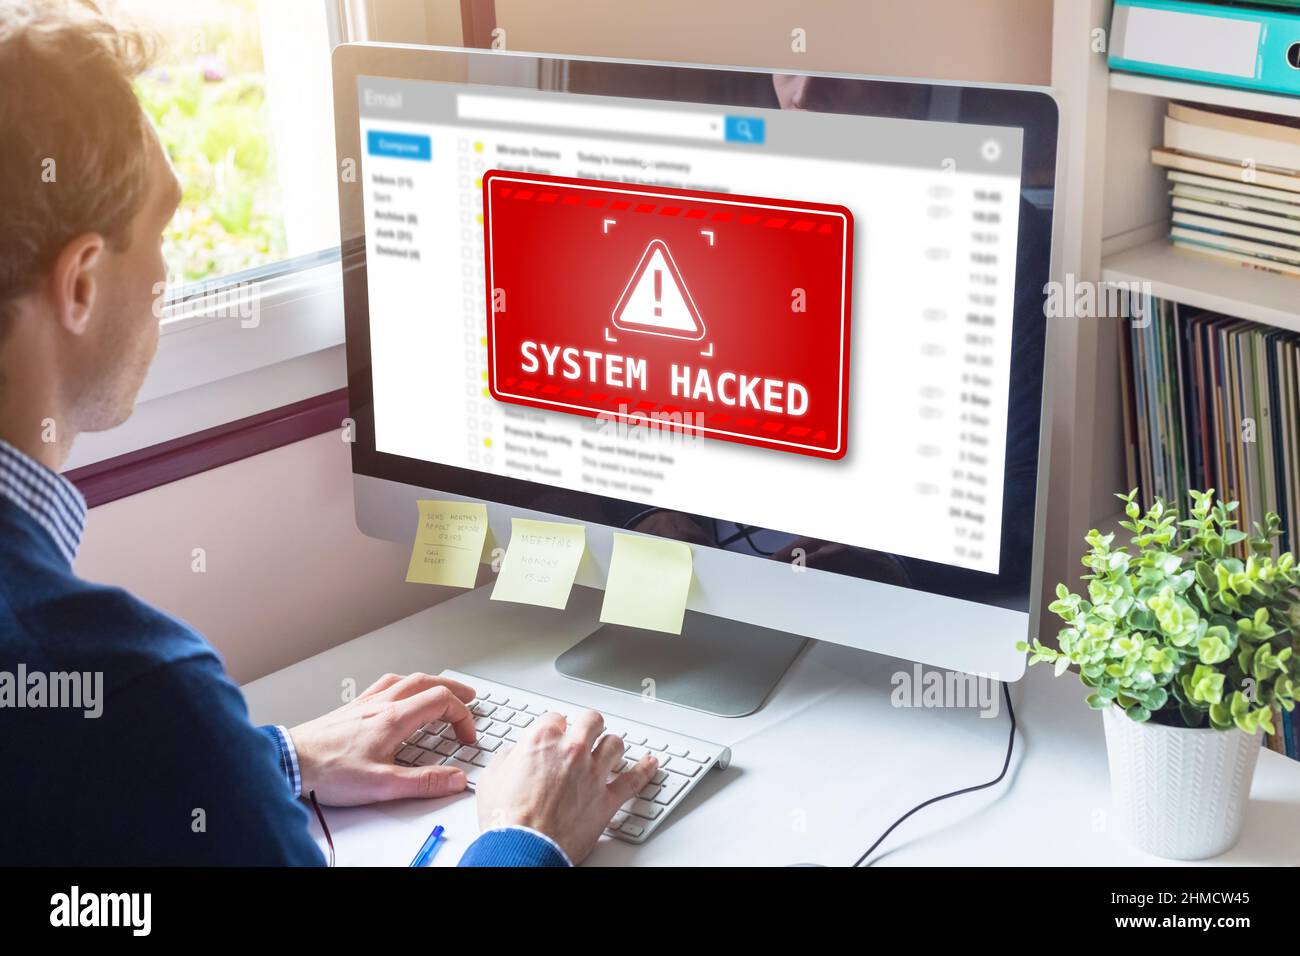 System gehackt Warnung auf dem Computerbildschirm nach Cyber-Angriff auf das Netzwerk. Cyber-Sicherheitslücke im Internet, Viren, Datenmissbrauch, bösartige Verbindungen Stockfoto